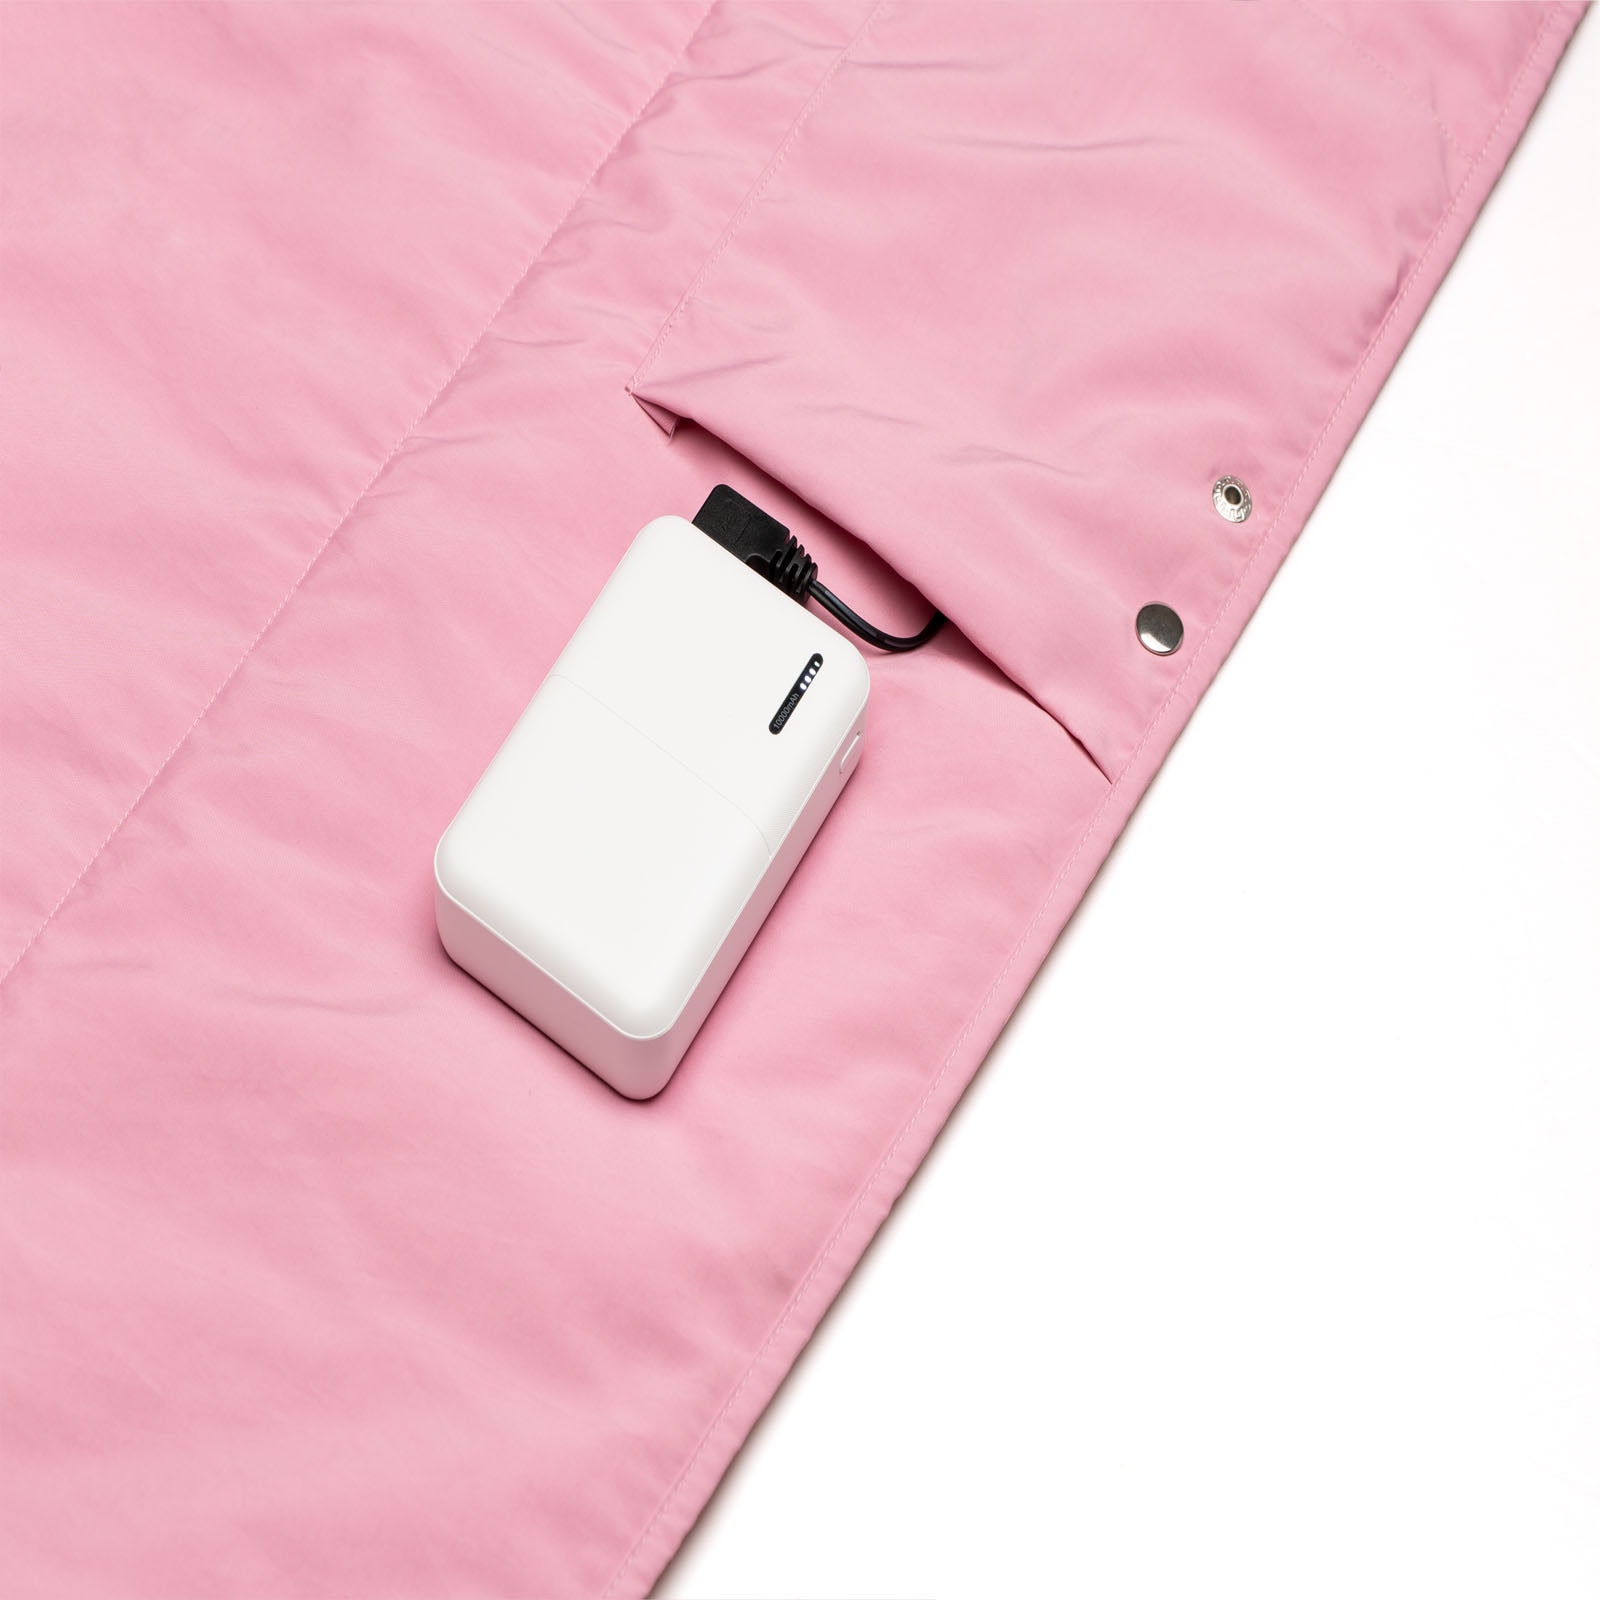 USB 충전 담요 난방 숄 사무용 이불 방한 보온 담요 수면 커버 세탁 가능